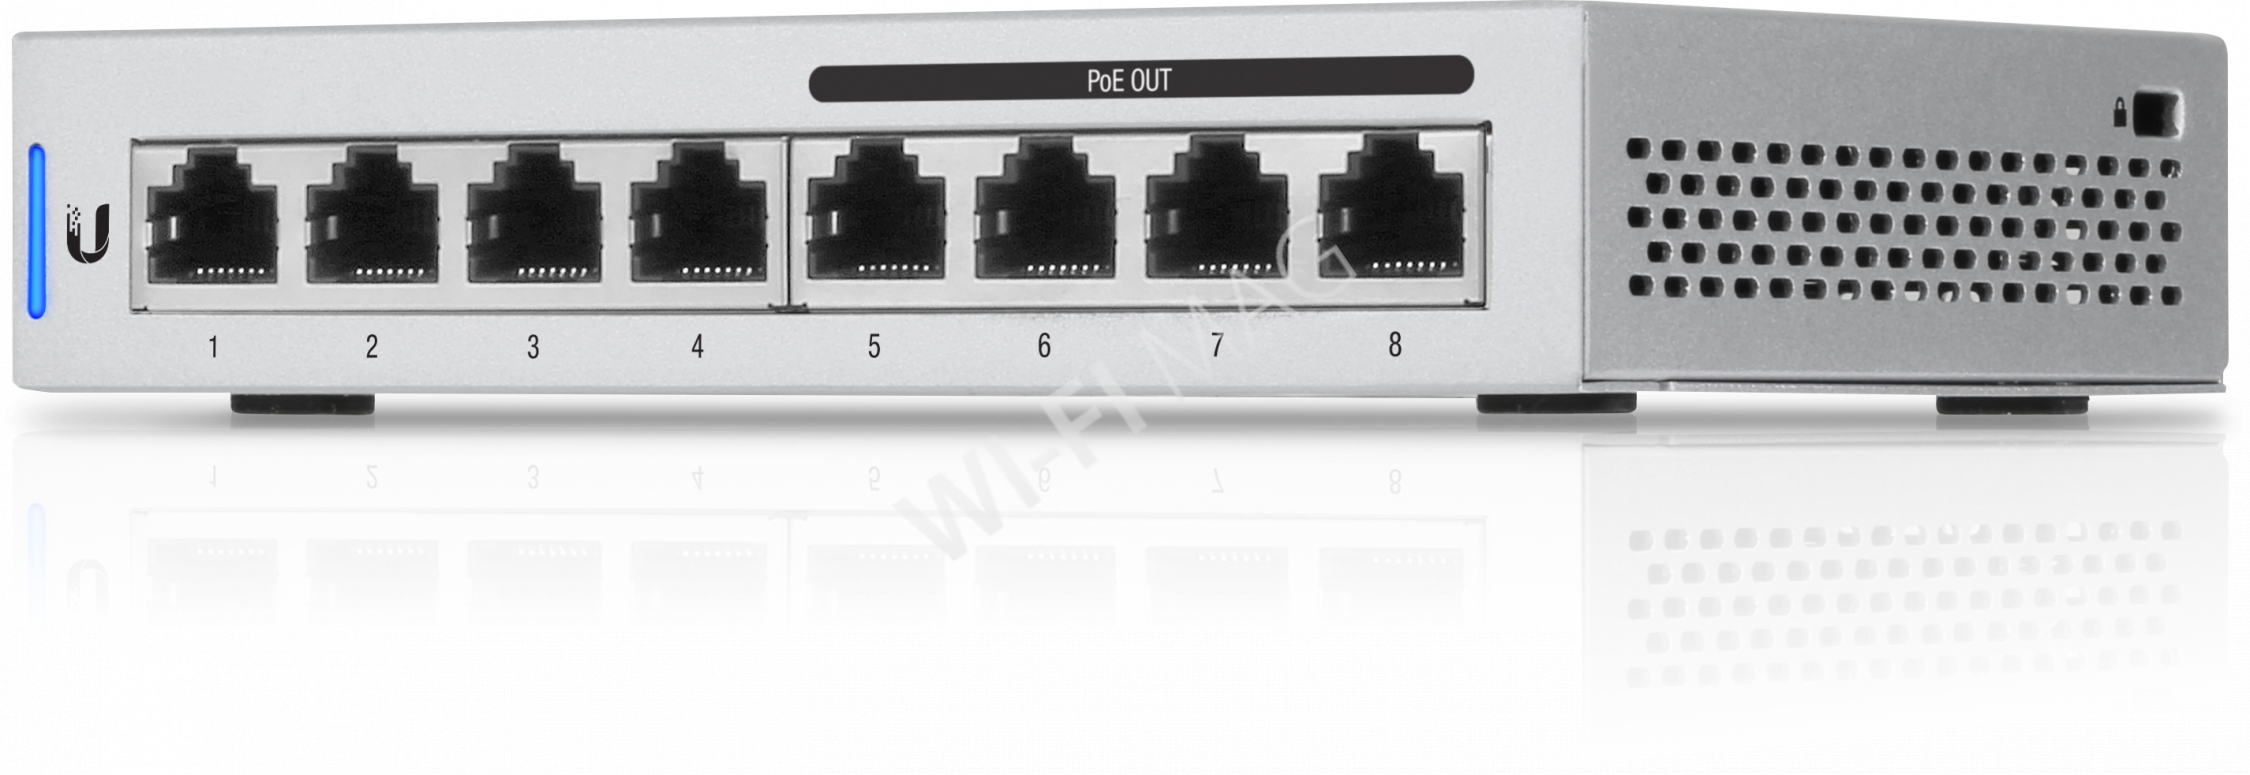 Ubiquiti UniFi Switch US-8-60W (5-pack) комплект из 5-ти устройств